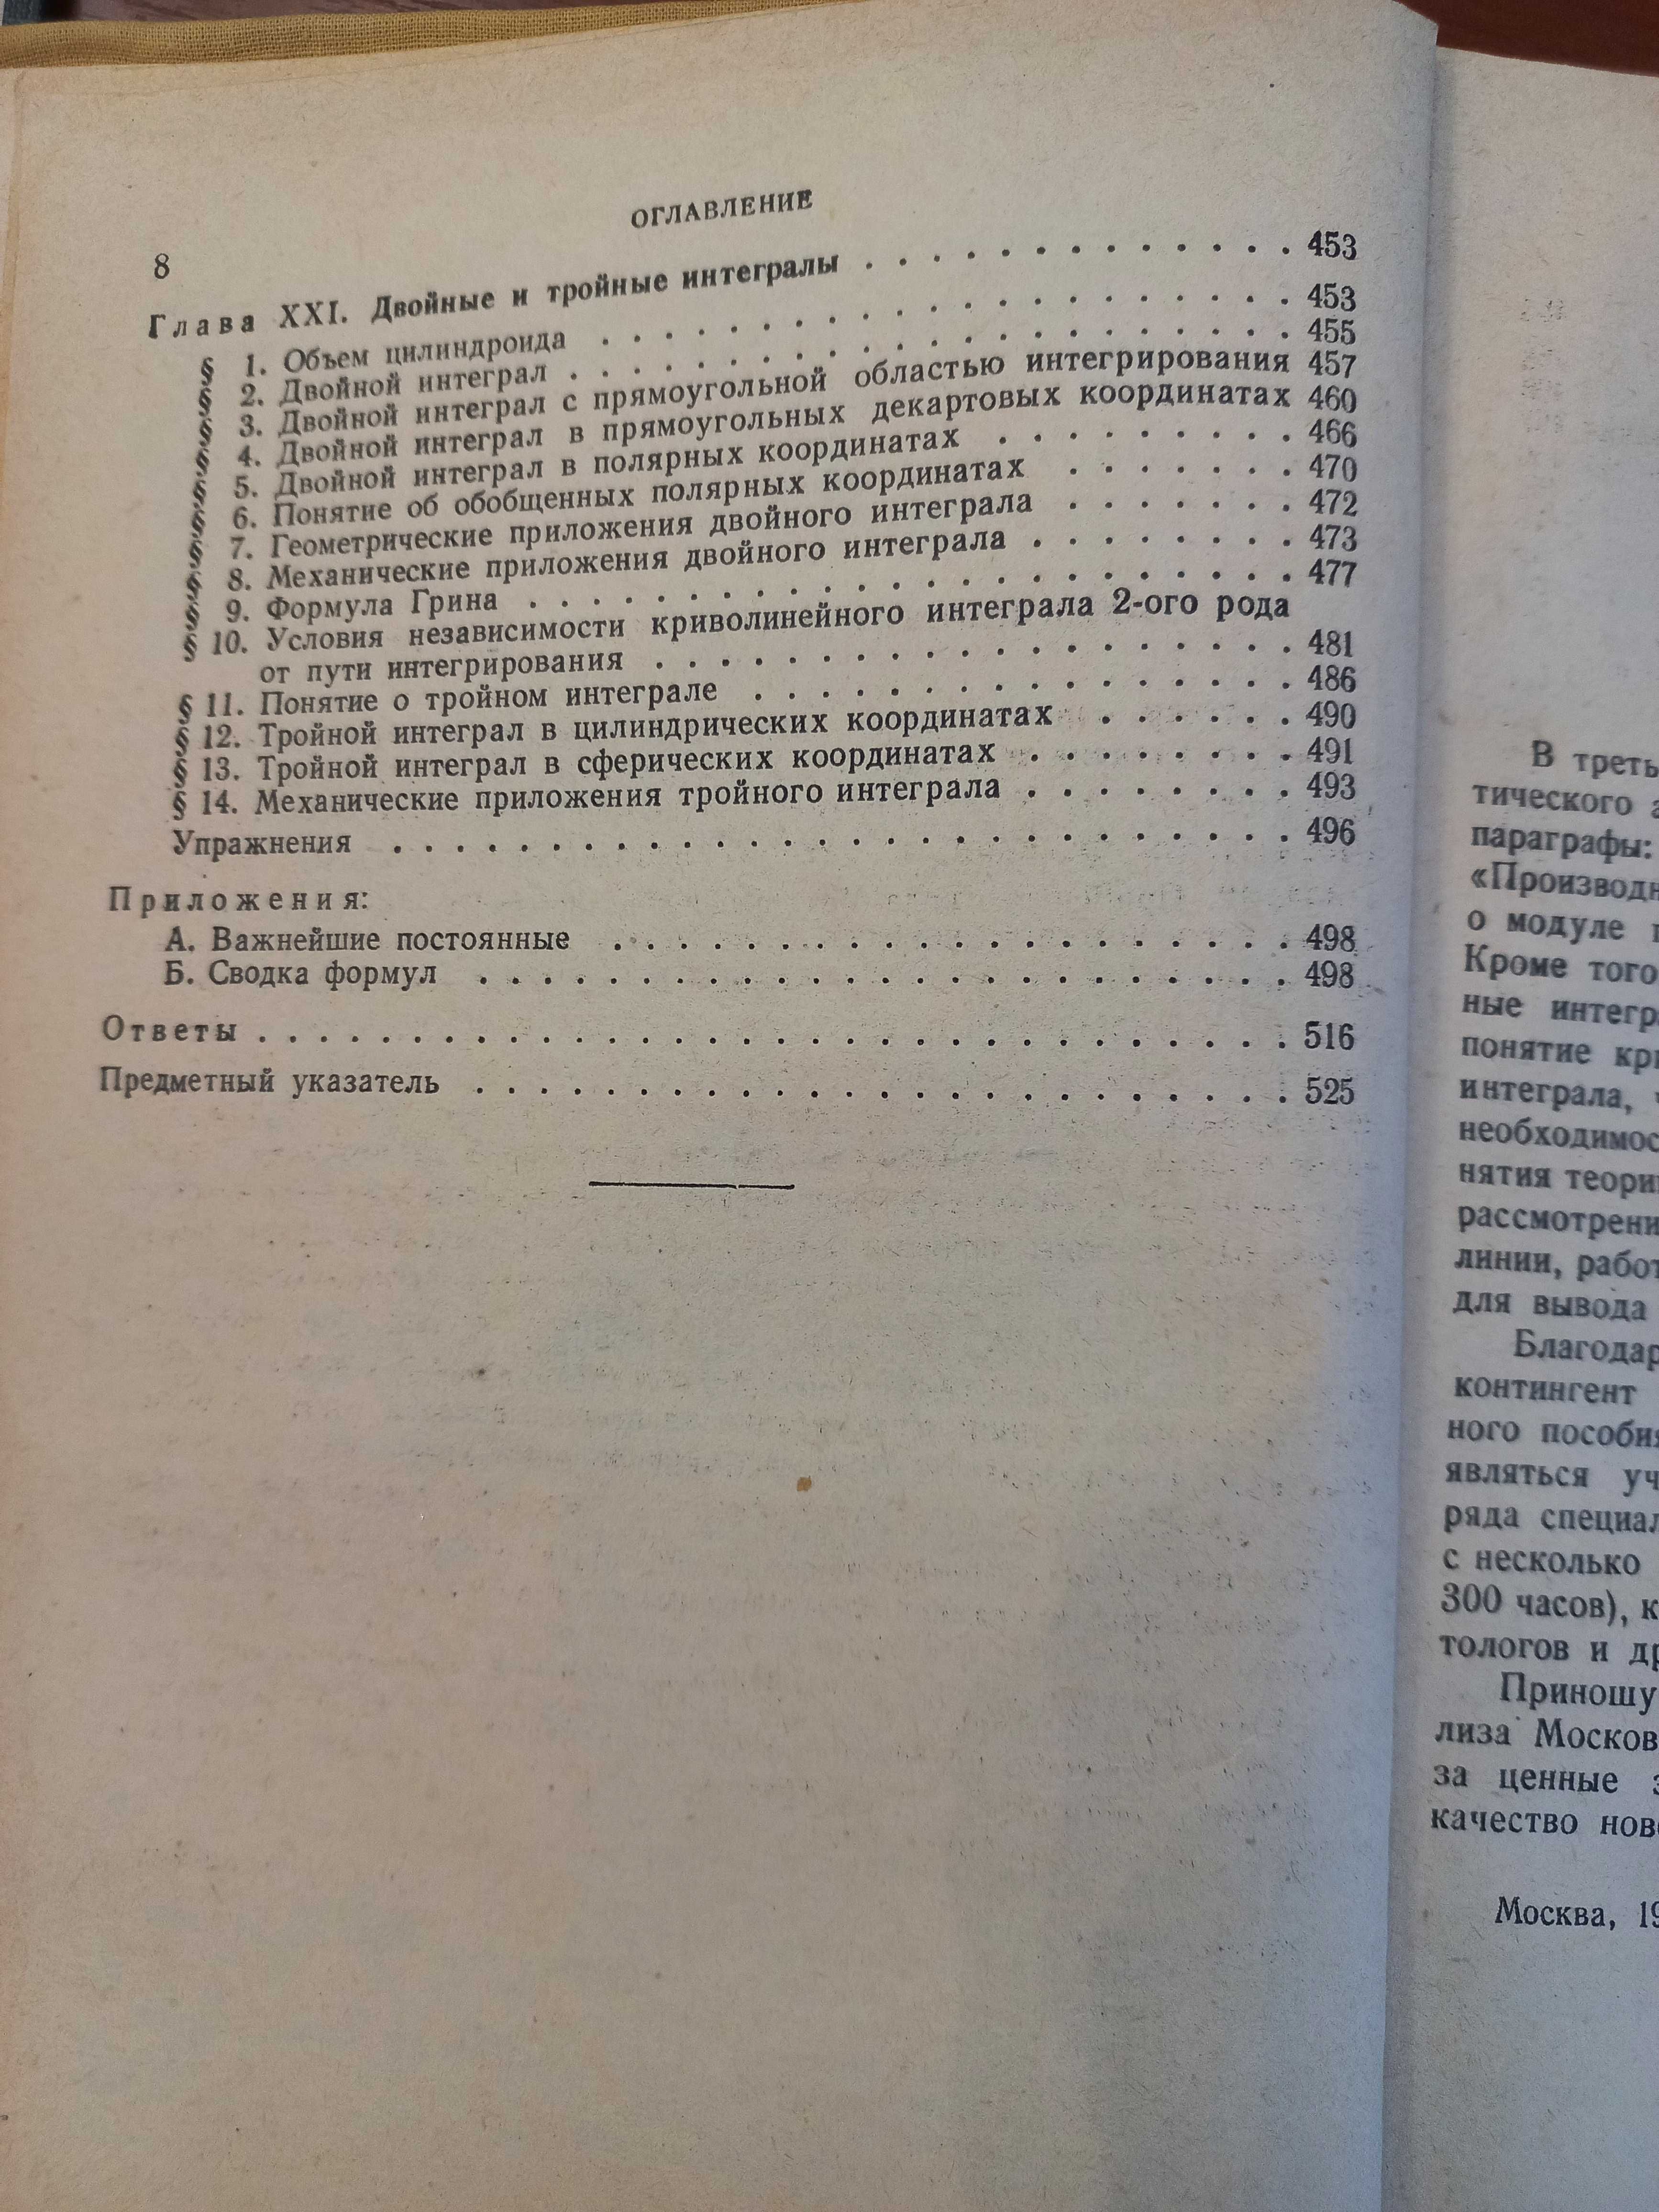 Книга учебник учеба математика теорема анализ функция СССР